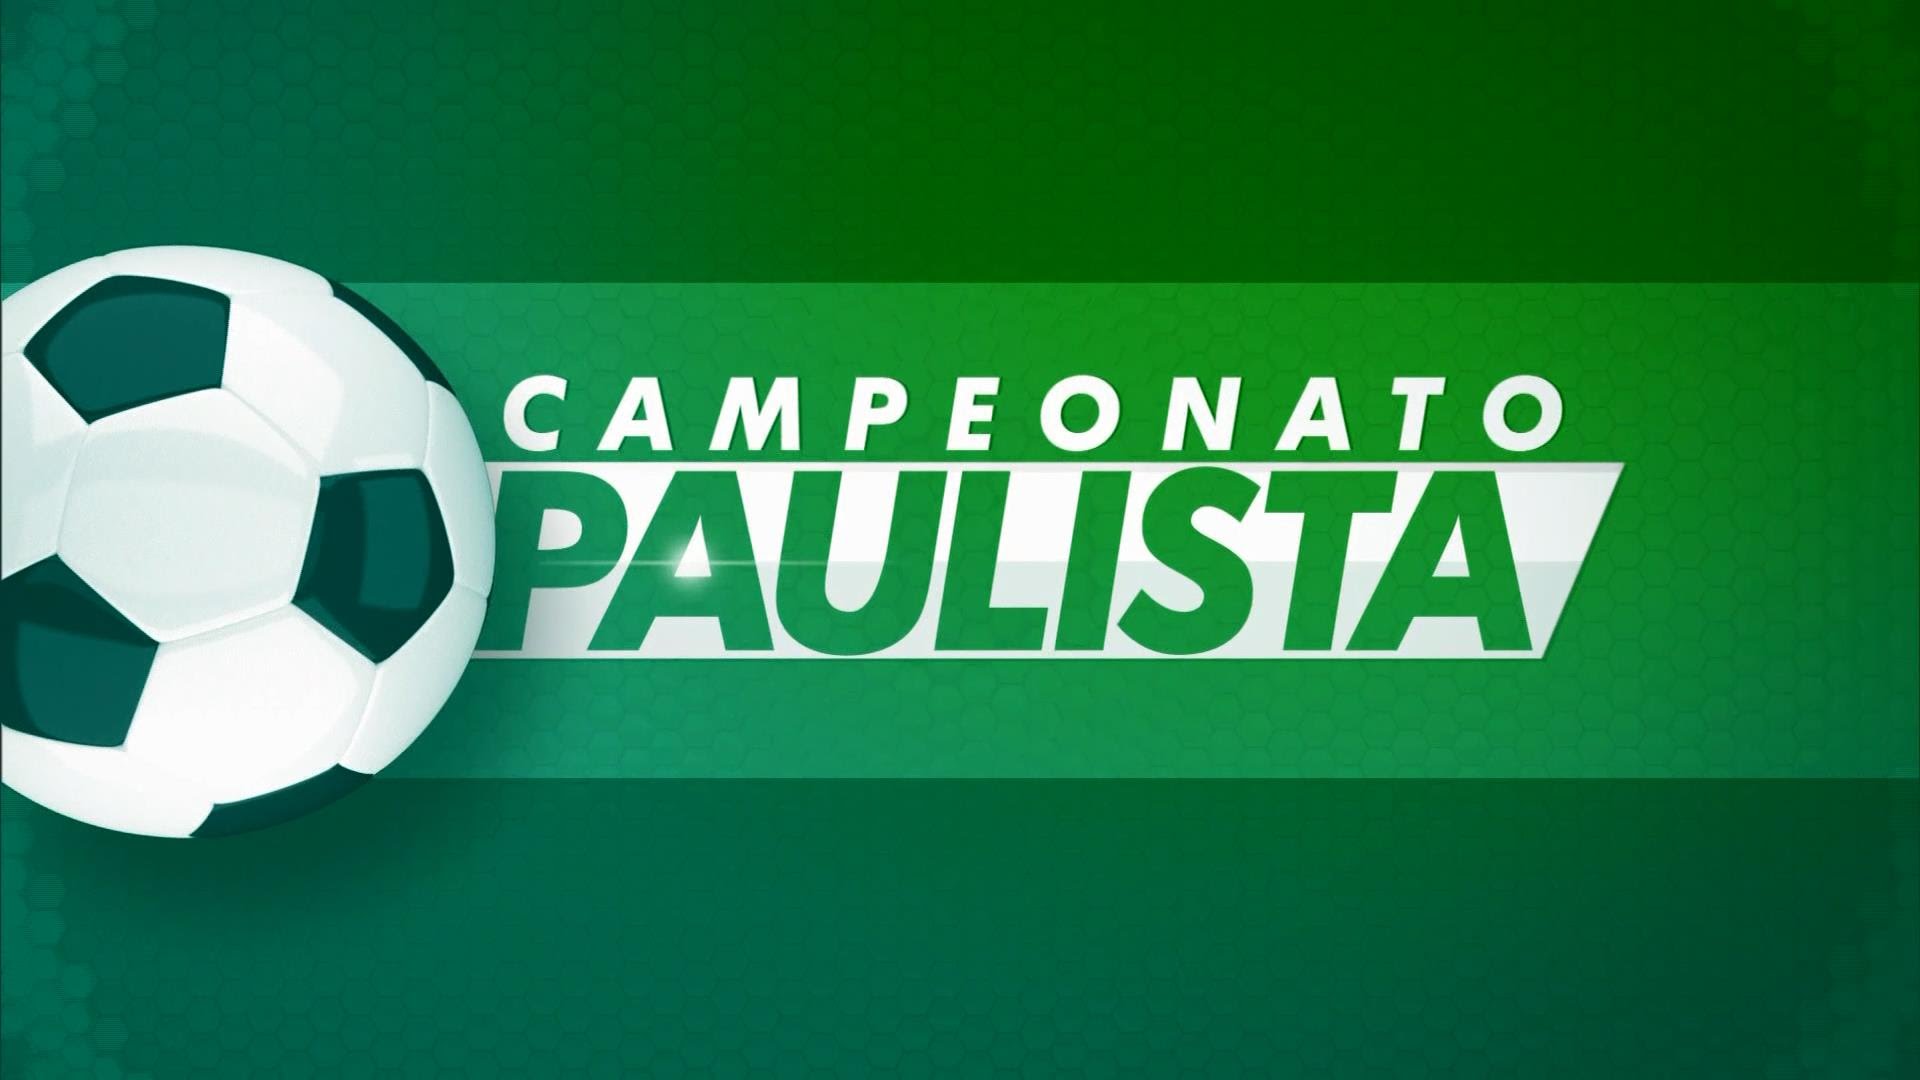 Onde assistir ao vivo a Corinthians x São Paulo, pela final do Campeonato  Paulista feminino?